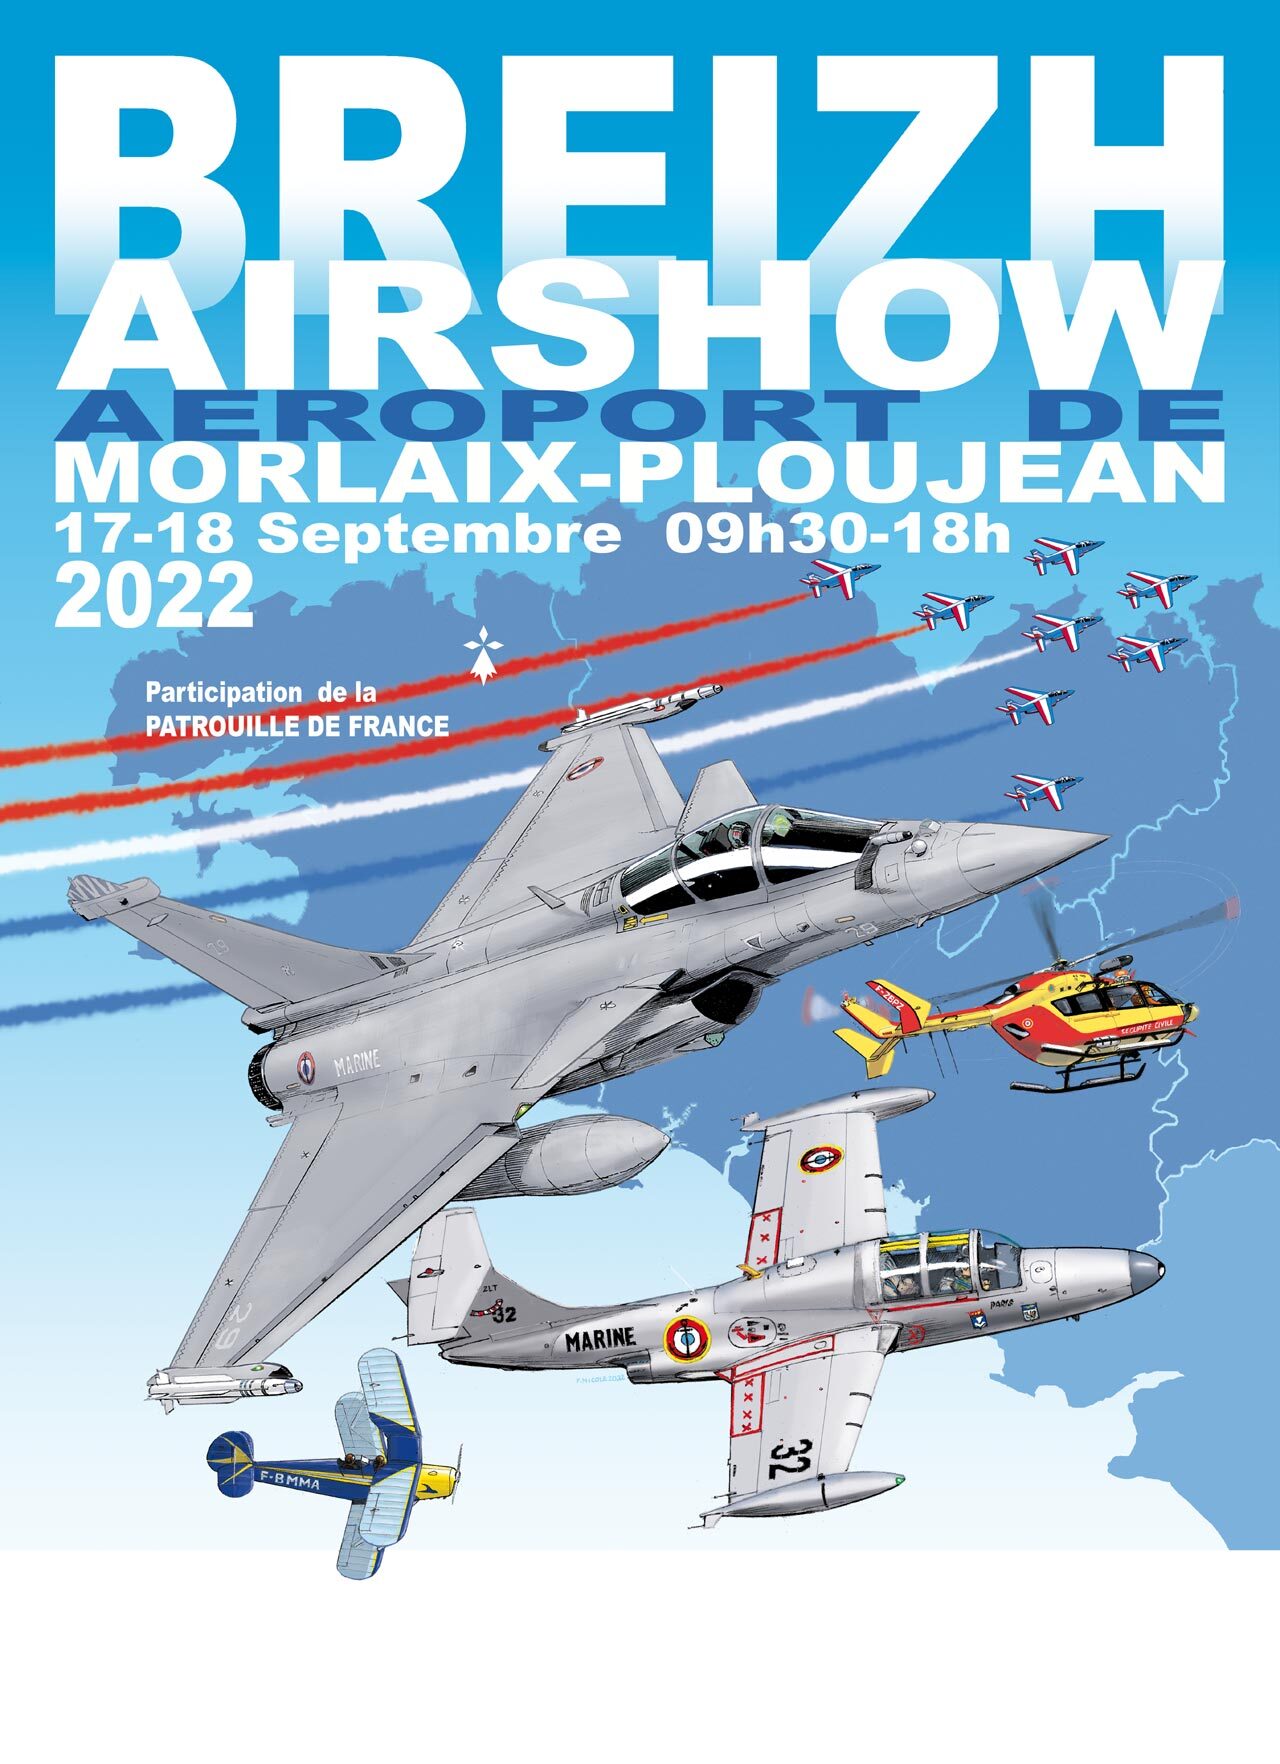 Breizh Airshow - Aéroport Morlaix-Ploujean les 17 & 18 septembre 2022  38l0